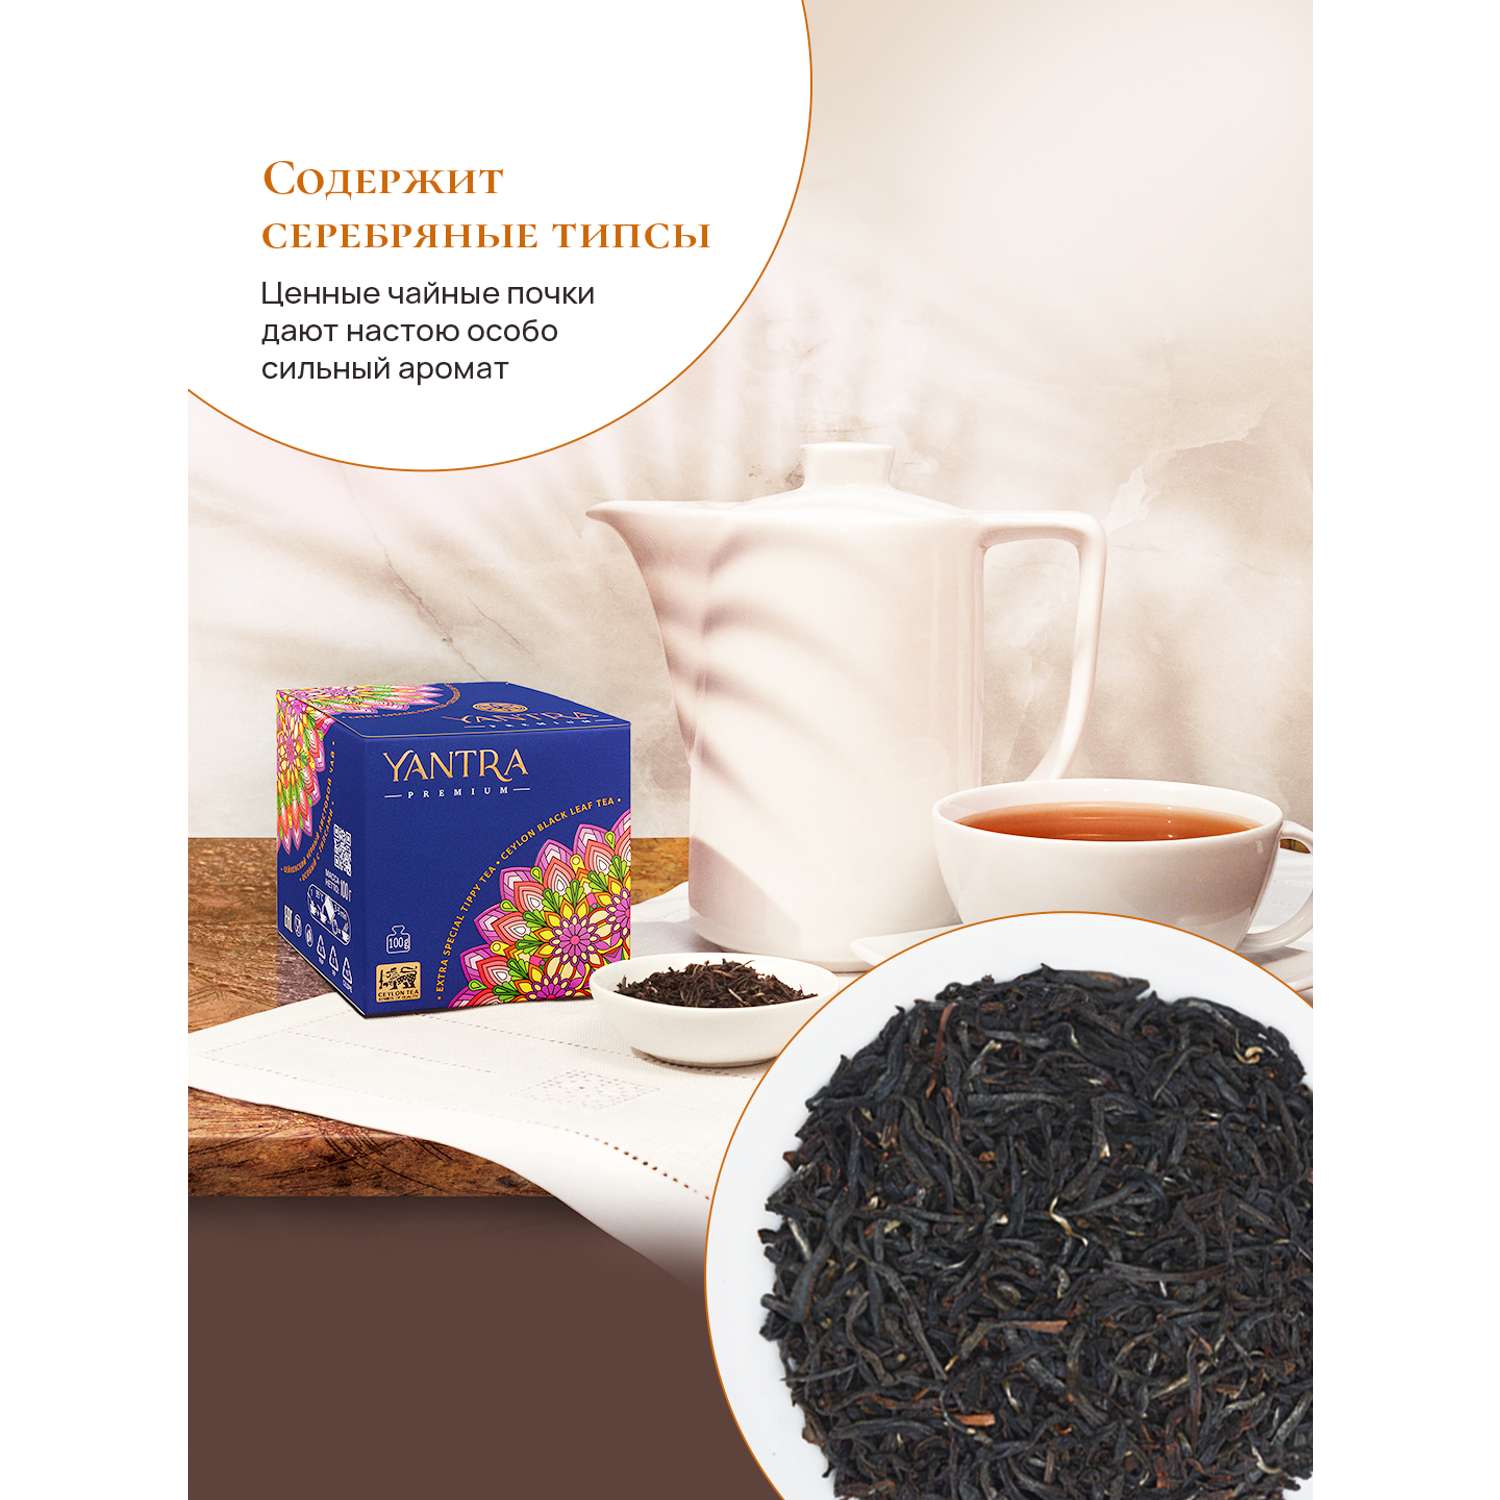 Чай Премиум Yantra чёрный листовой с типсами стандарт Extra Special Tippy Tea 100 г - фото 2